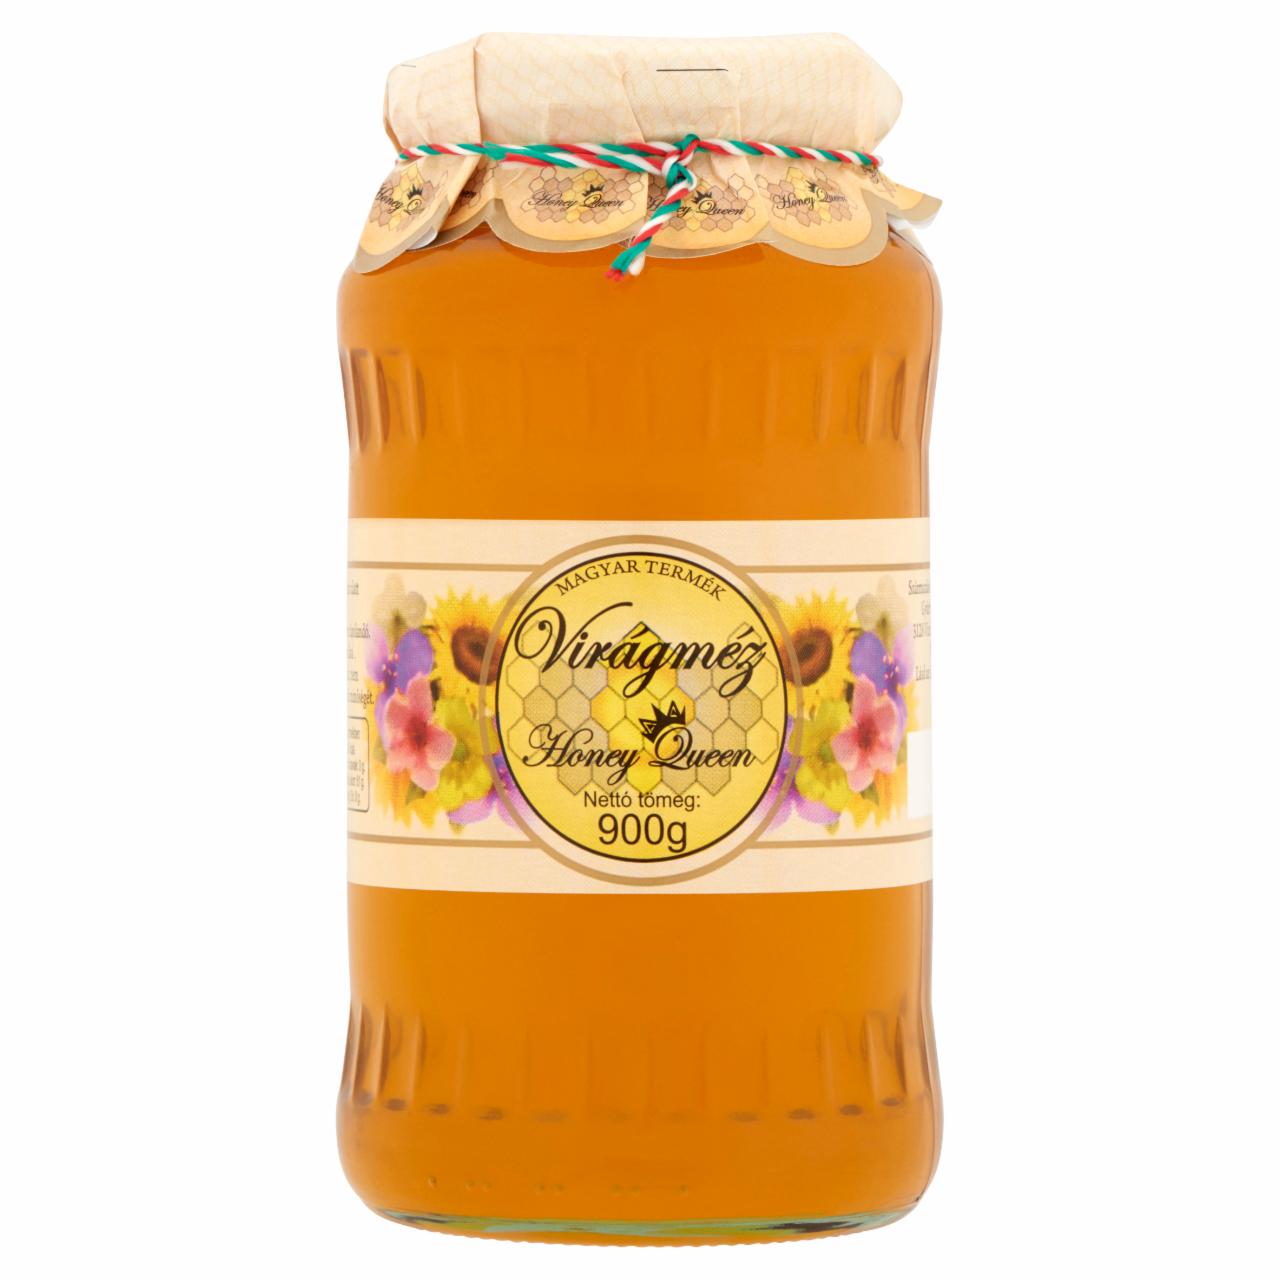 Képek - Honey Queen virágméz 900 g